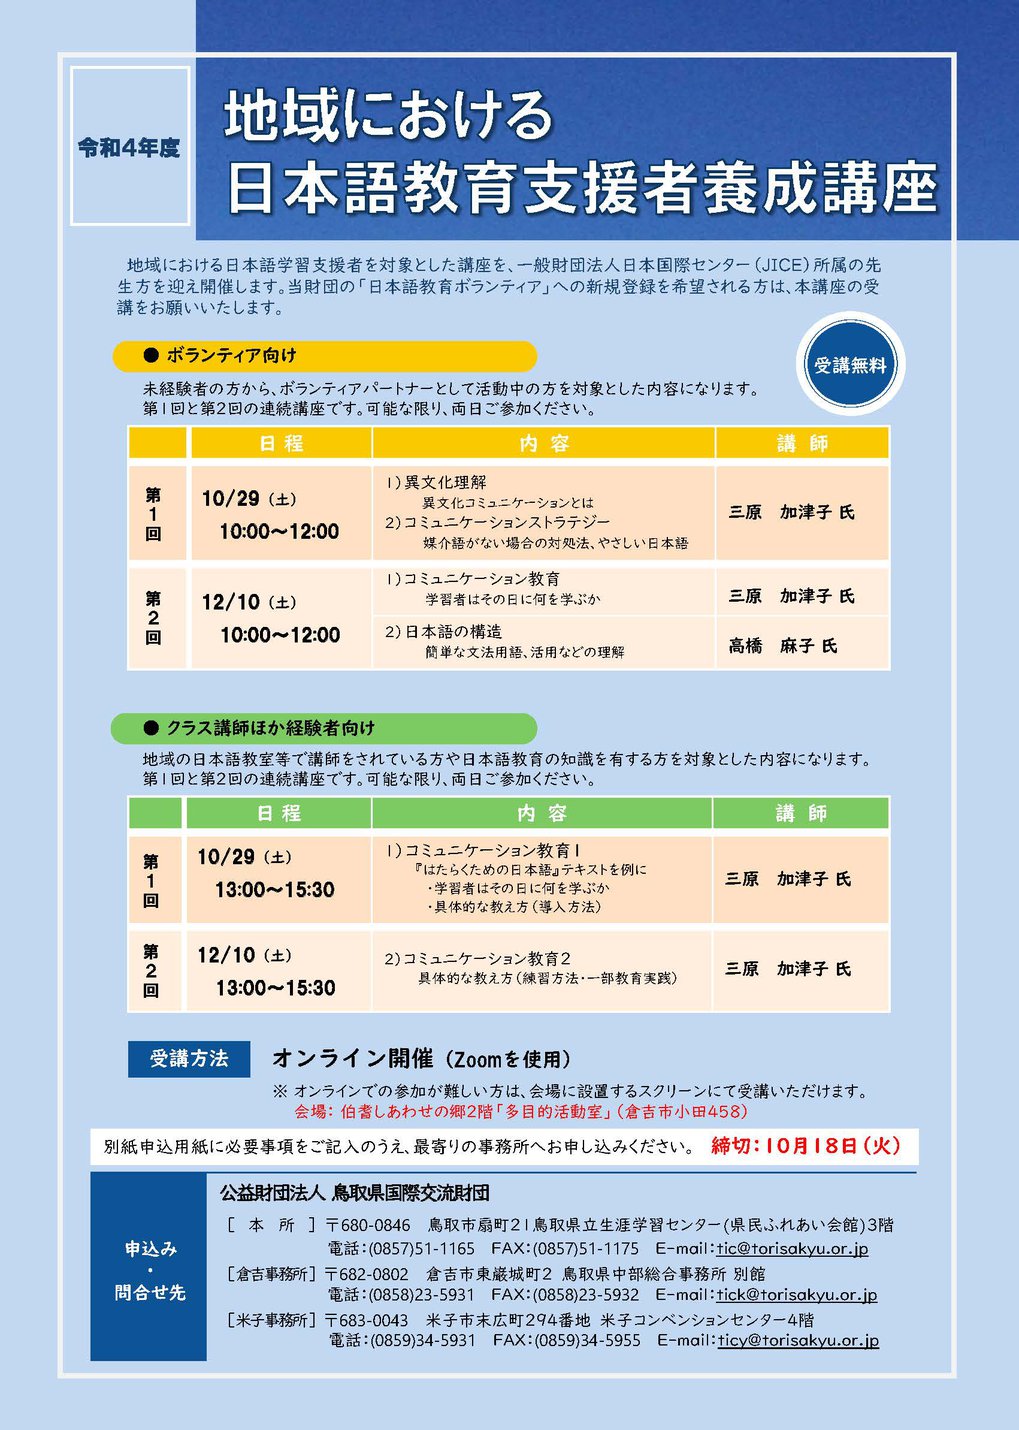 R4 地域における日本語教育支援者養成講座　チラシ_ページ_1.jpg